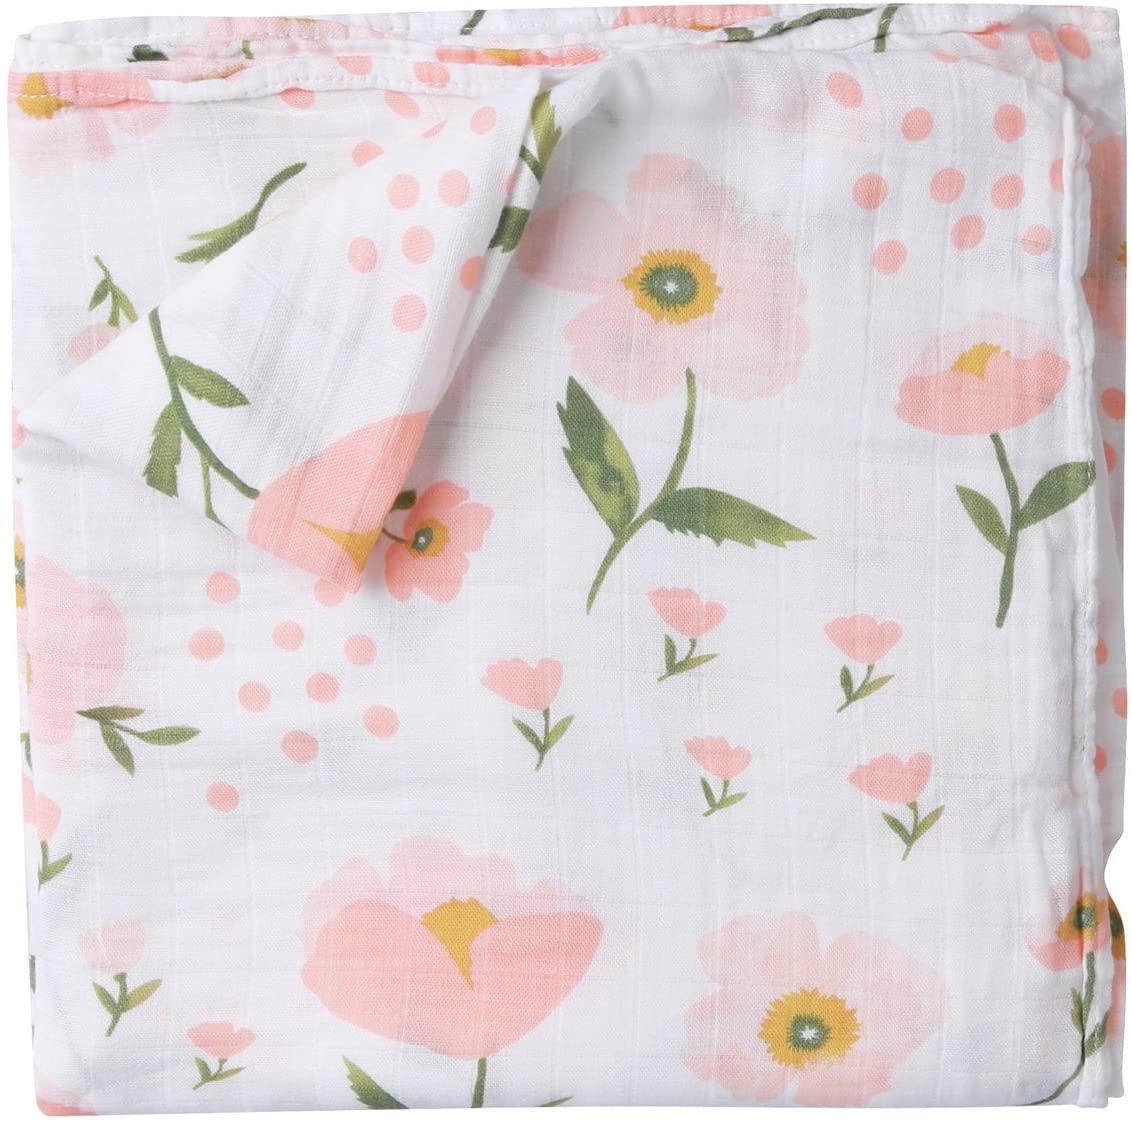 Poppy Cotton Muslin Swaddle Blanket